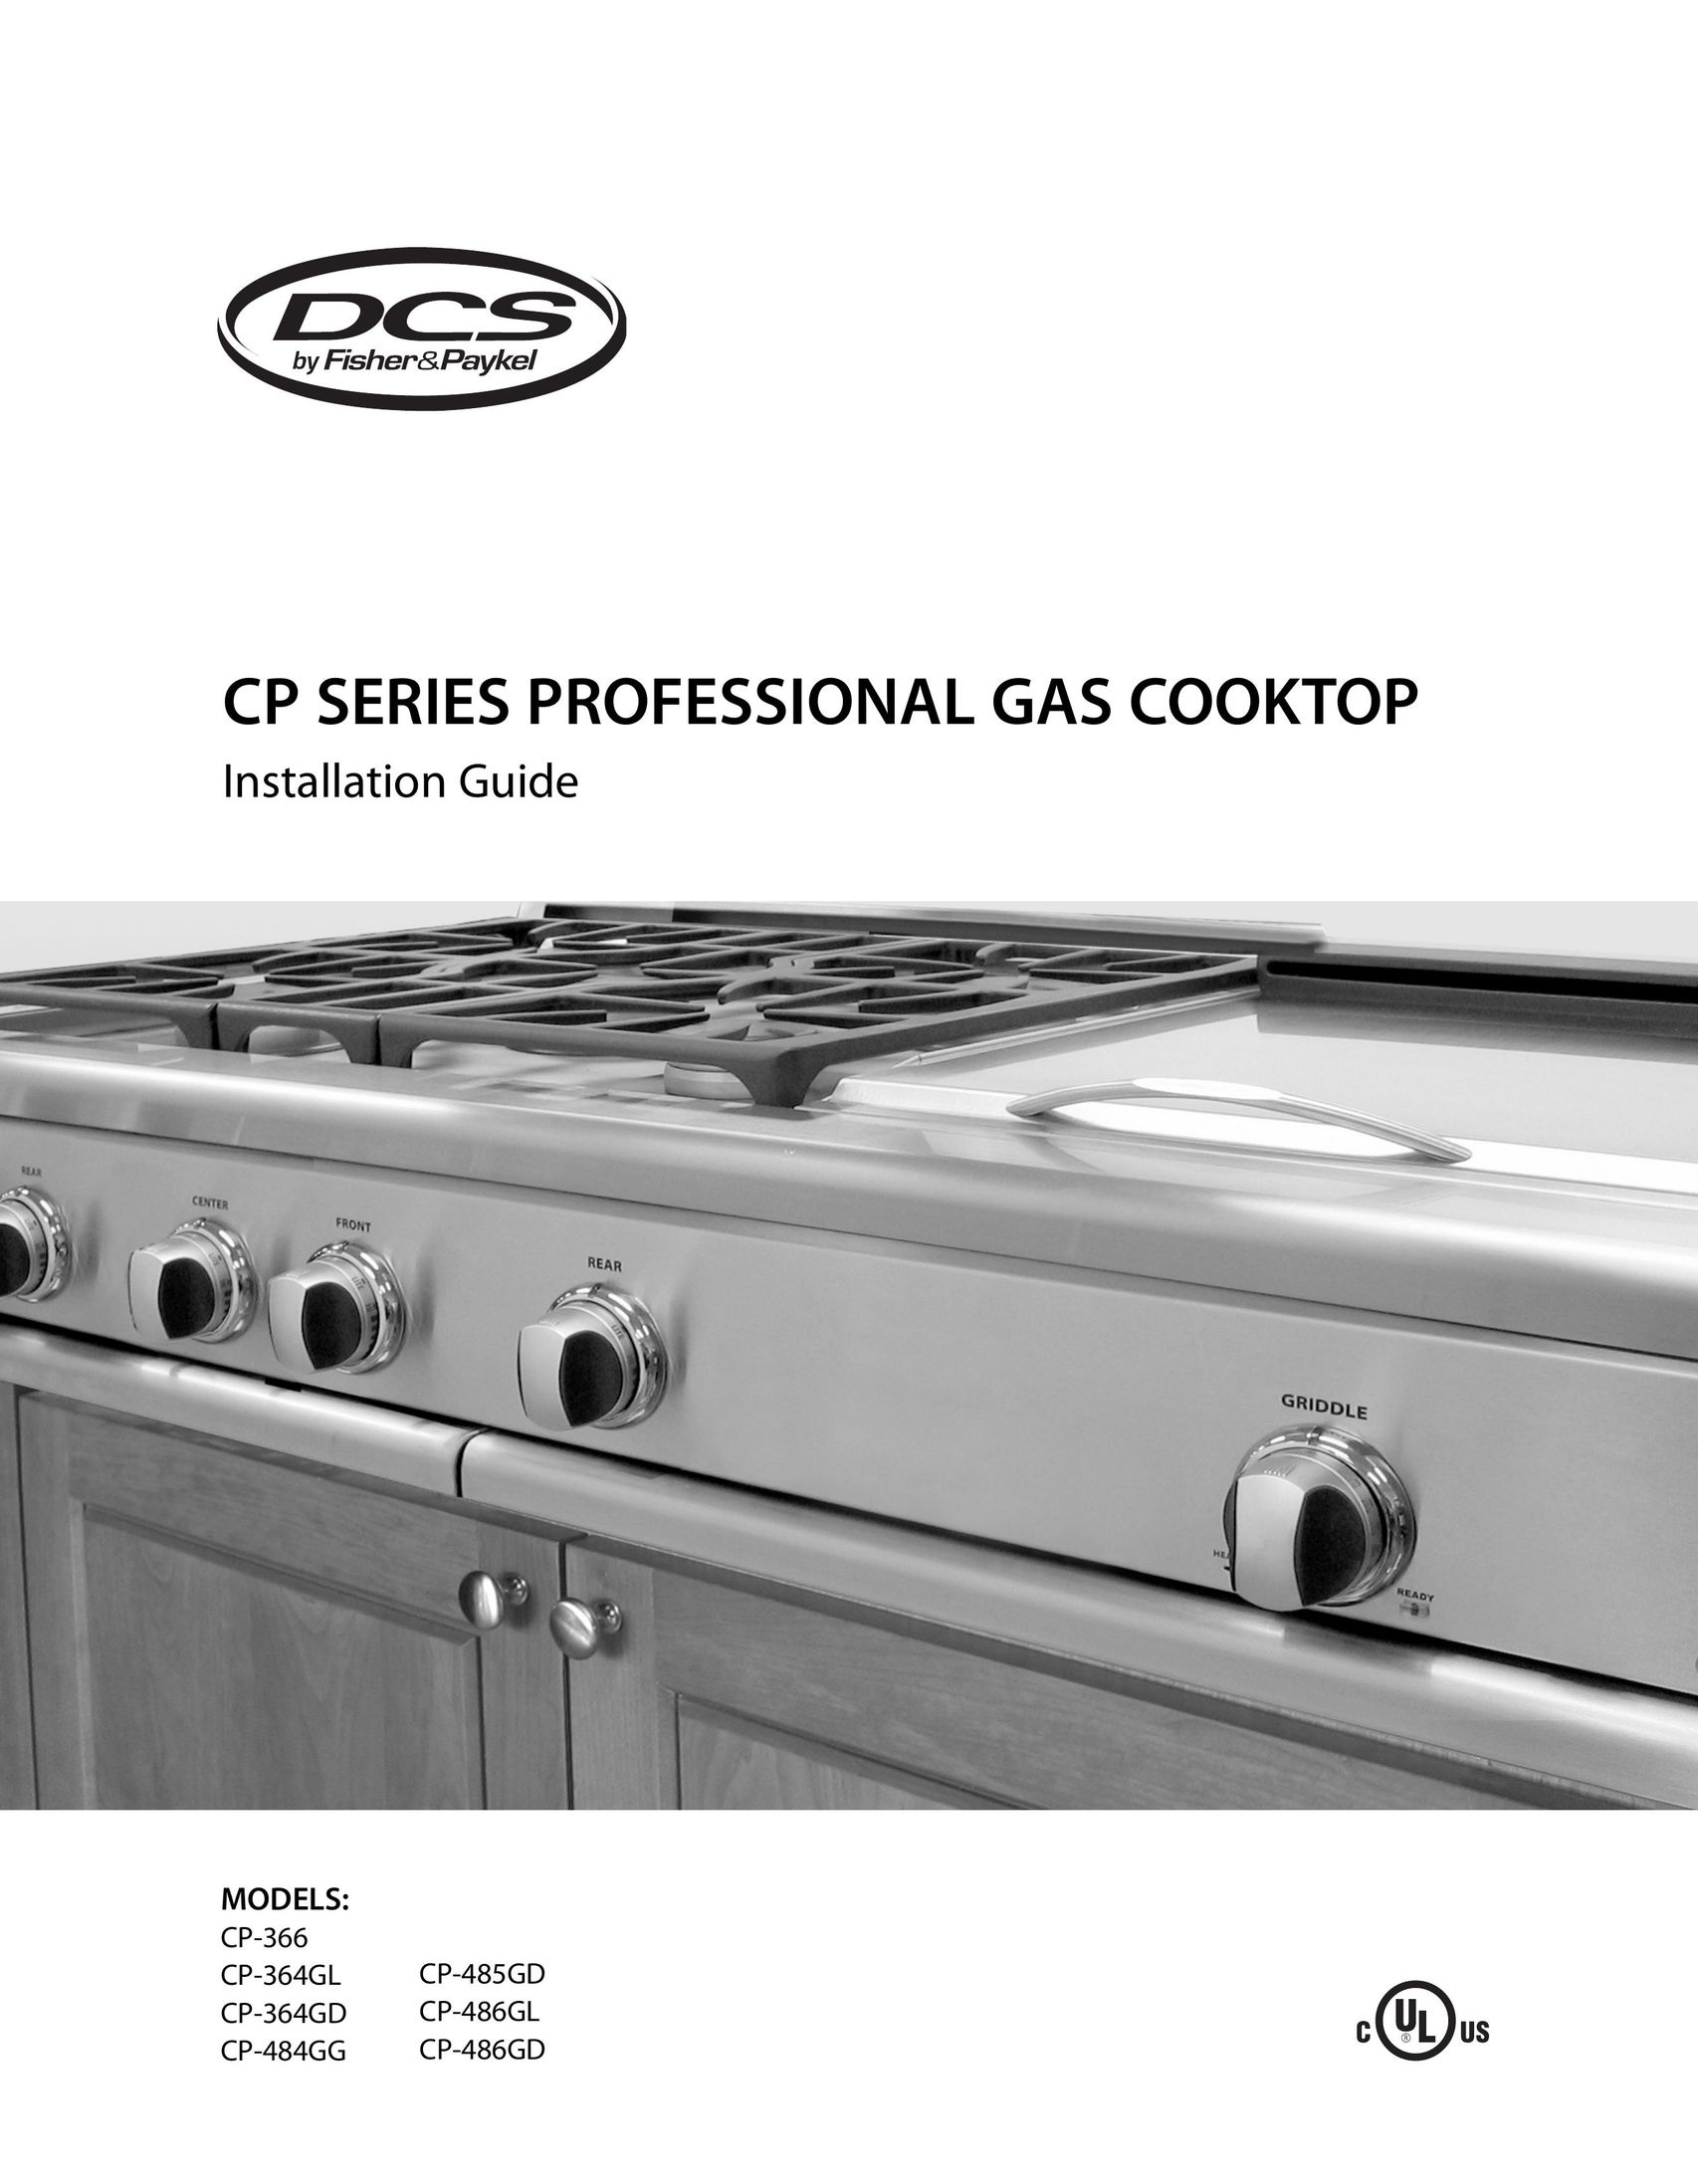 DCS CP-485GD Cooktop User Manual